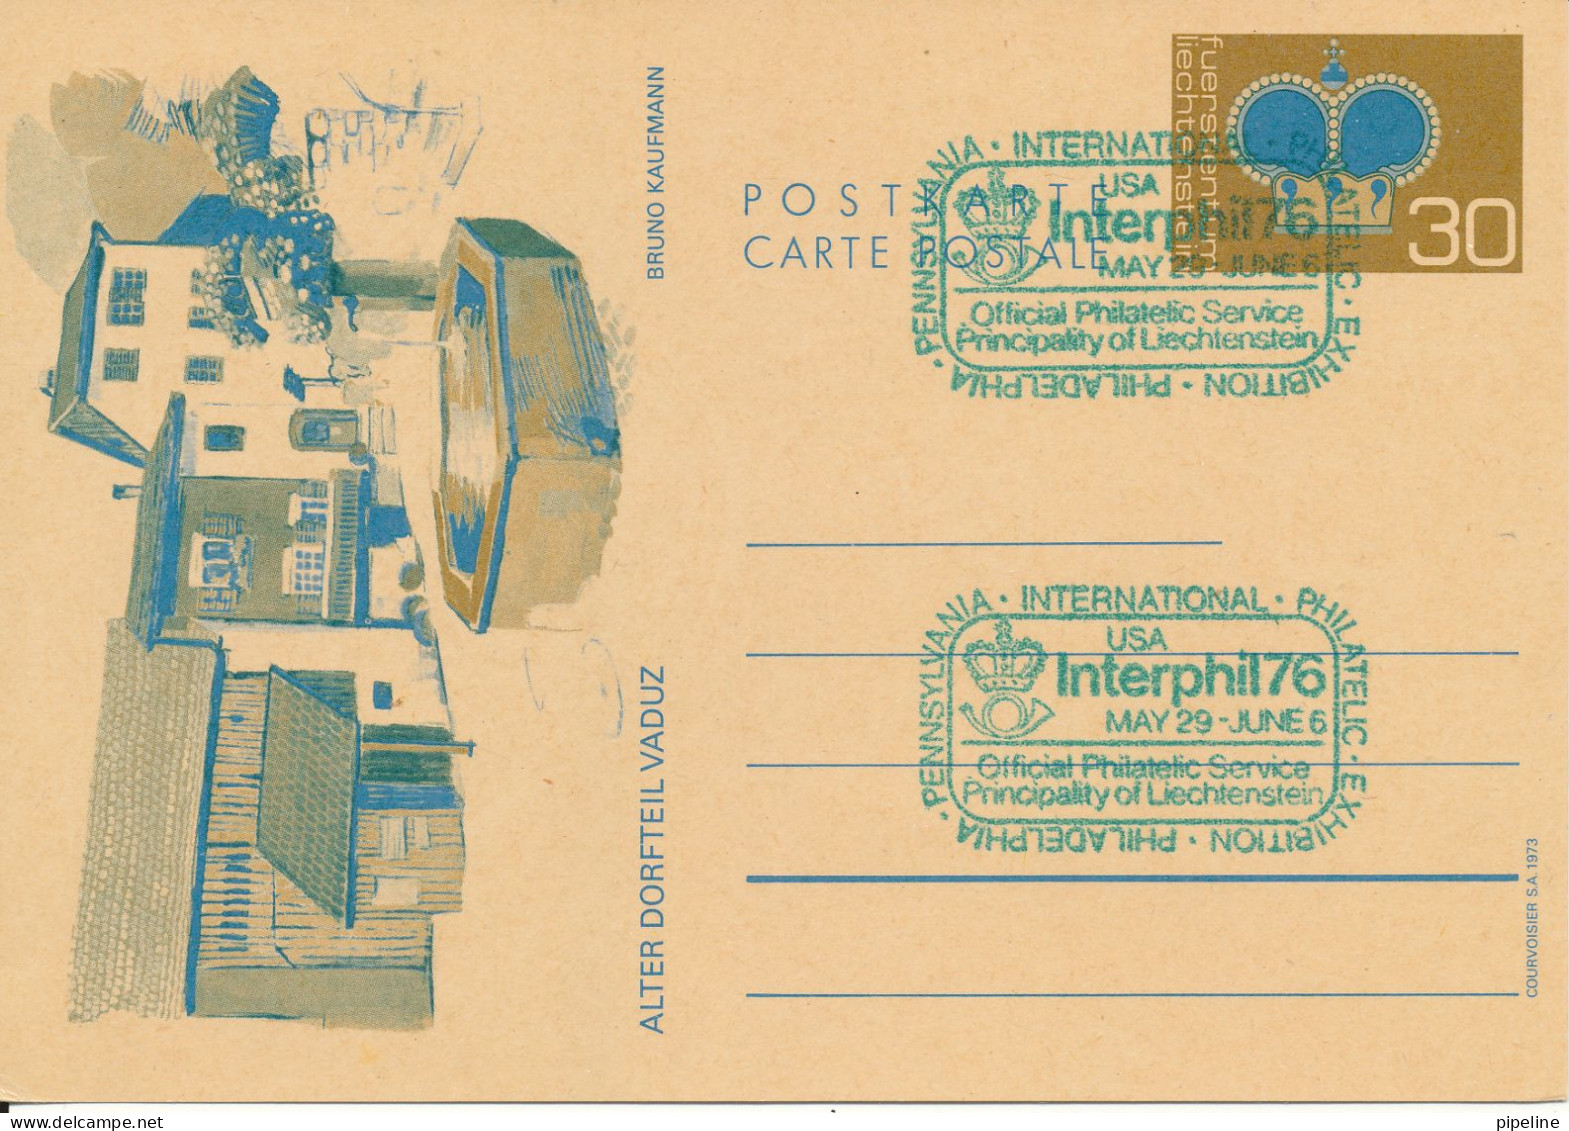 Liechtenstein Postal Stationery Card Interphil 76 USA 29-5 - 6-6-1976 - Stamped Stationery